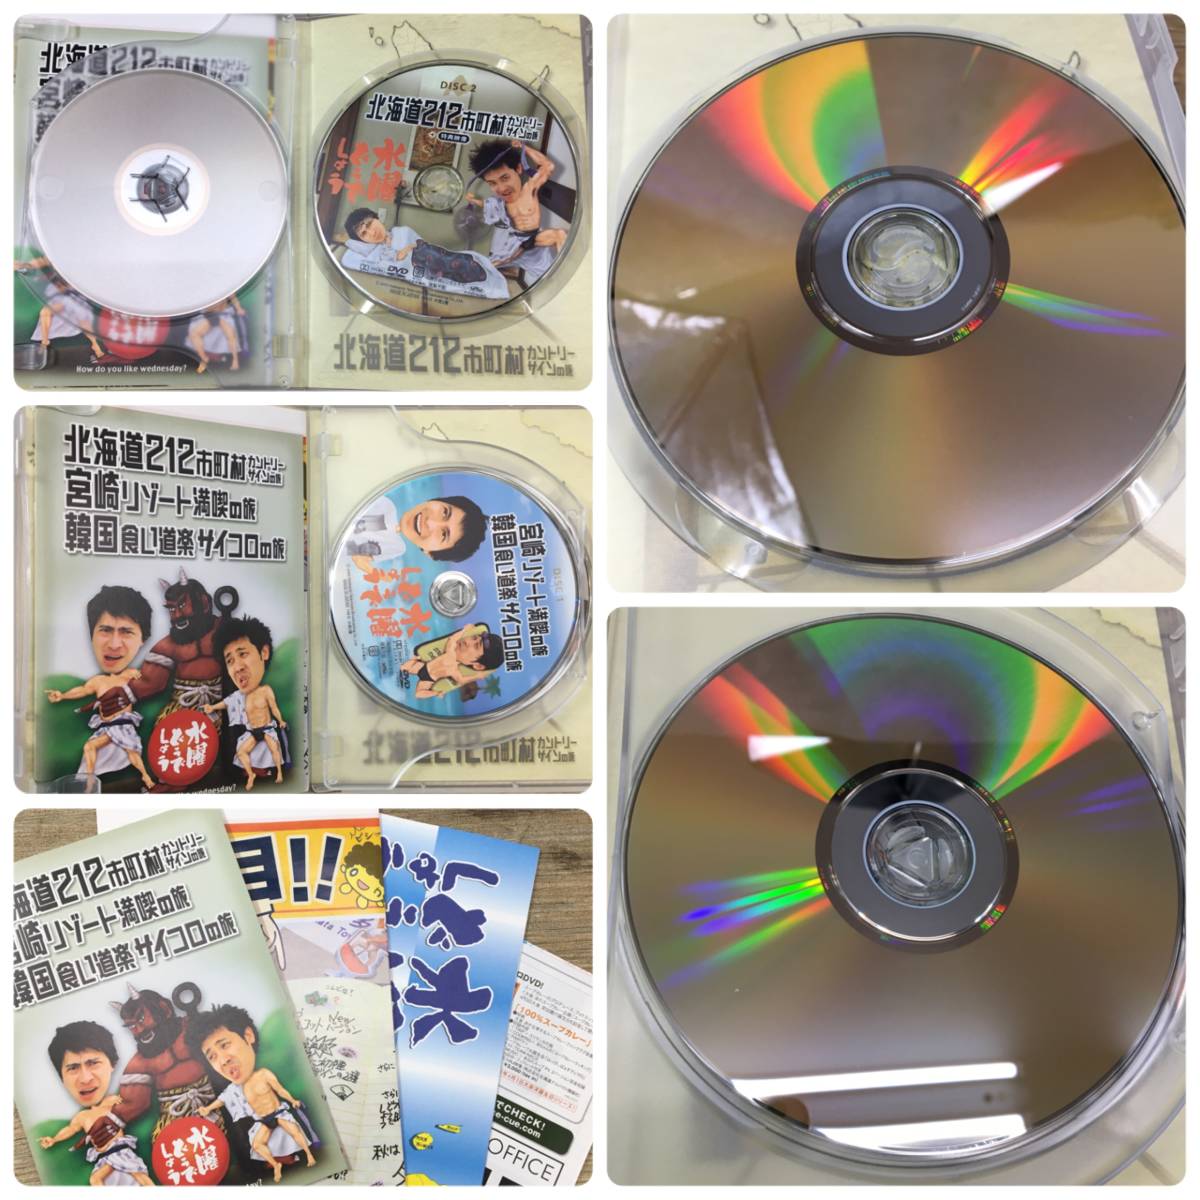 水曜どうでしょう DVD全集 vol.1 2002/1996～1997 大泉洋 鈴井貴之 菊MZ_画像7